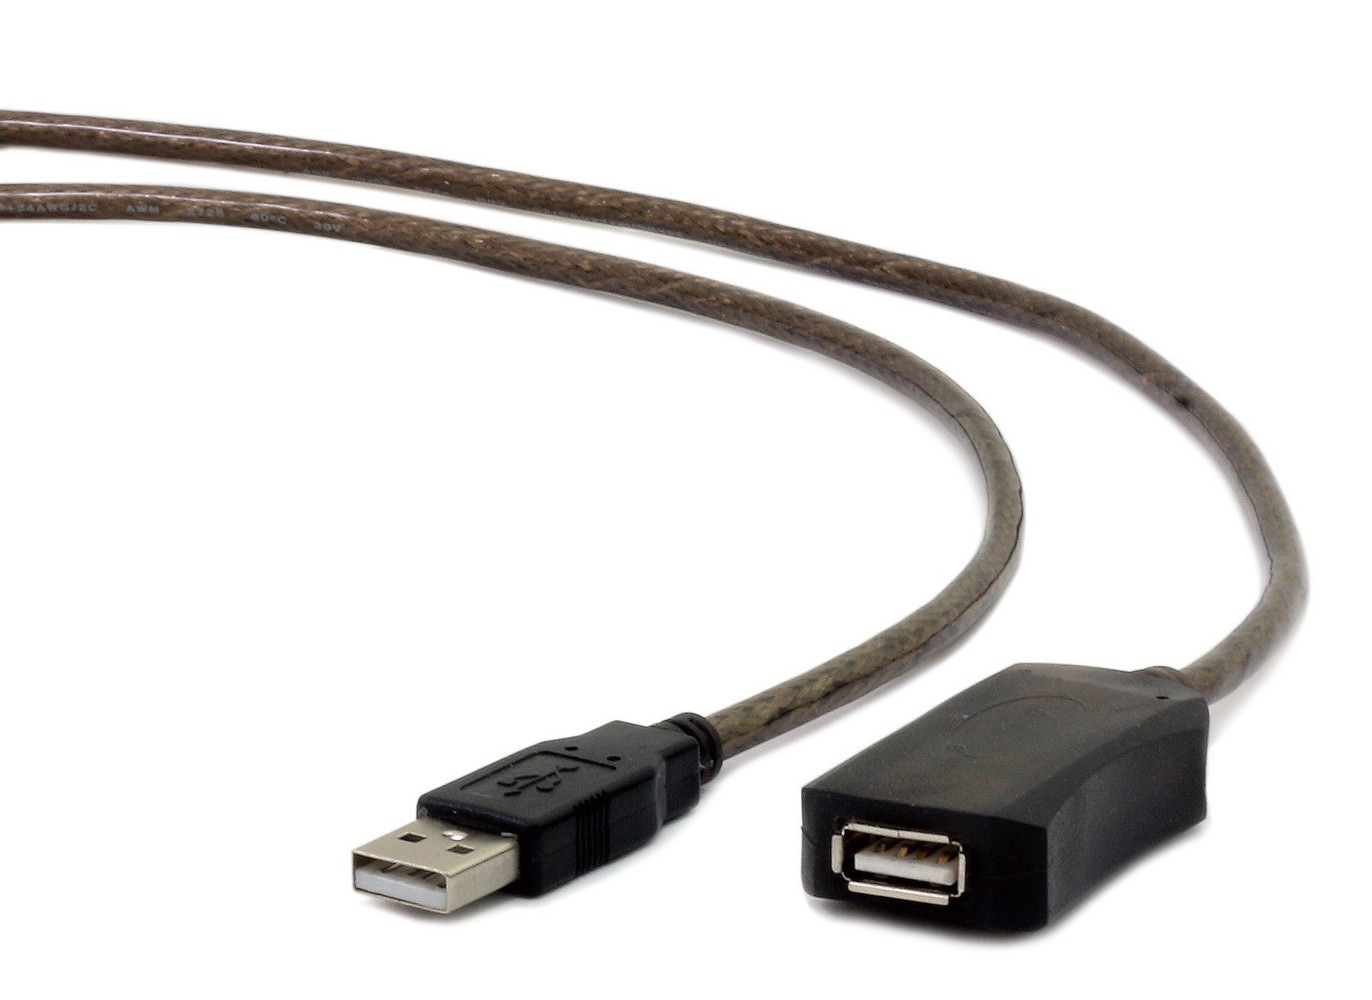   USB Cablexpert UAE-01-10M 10